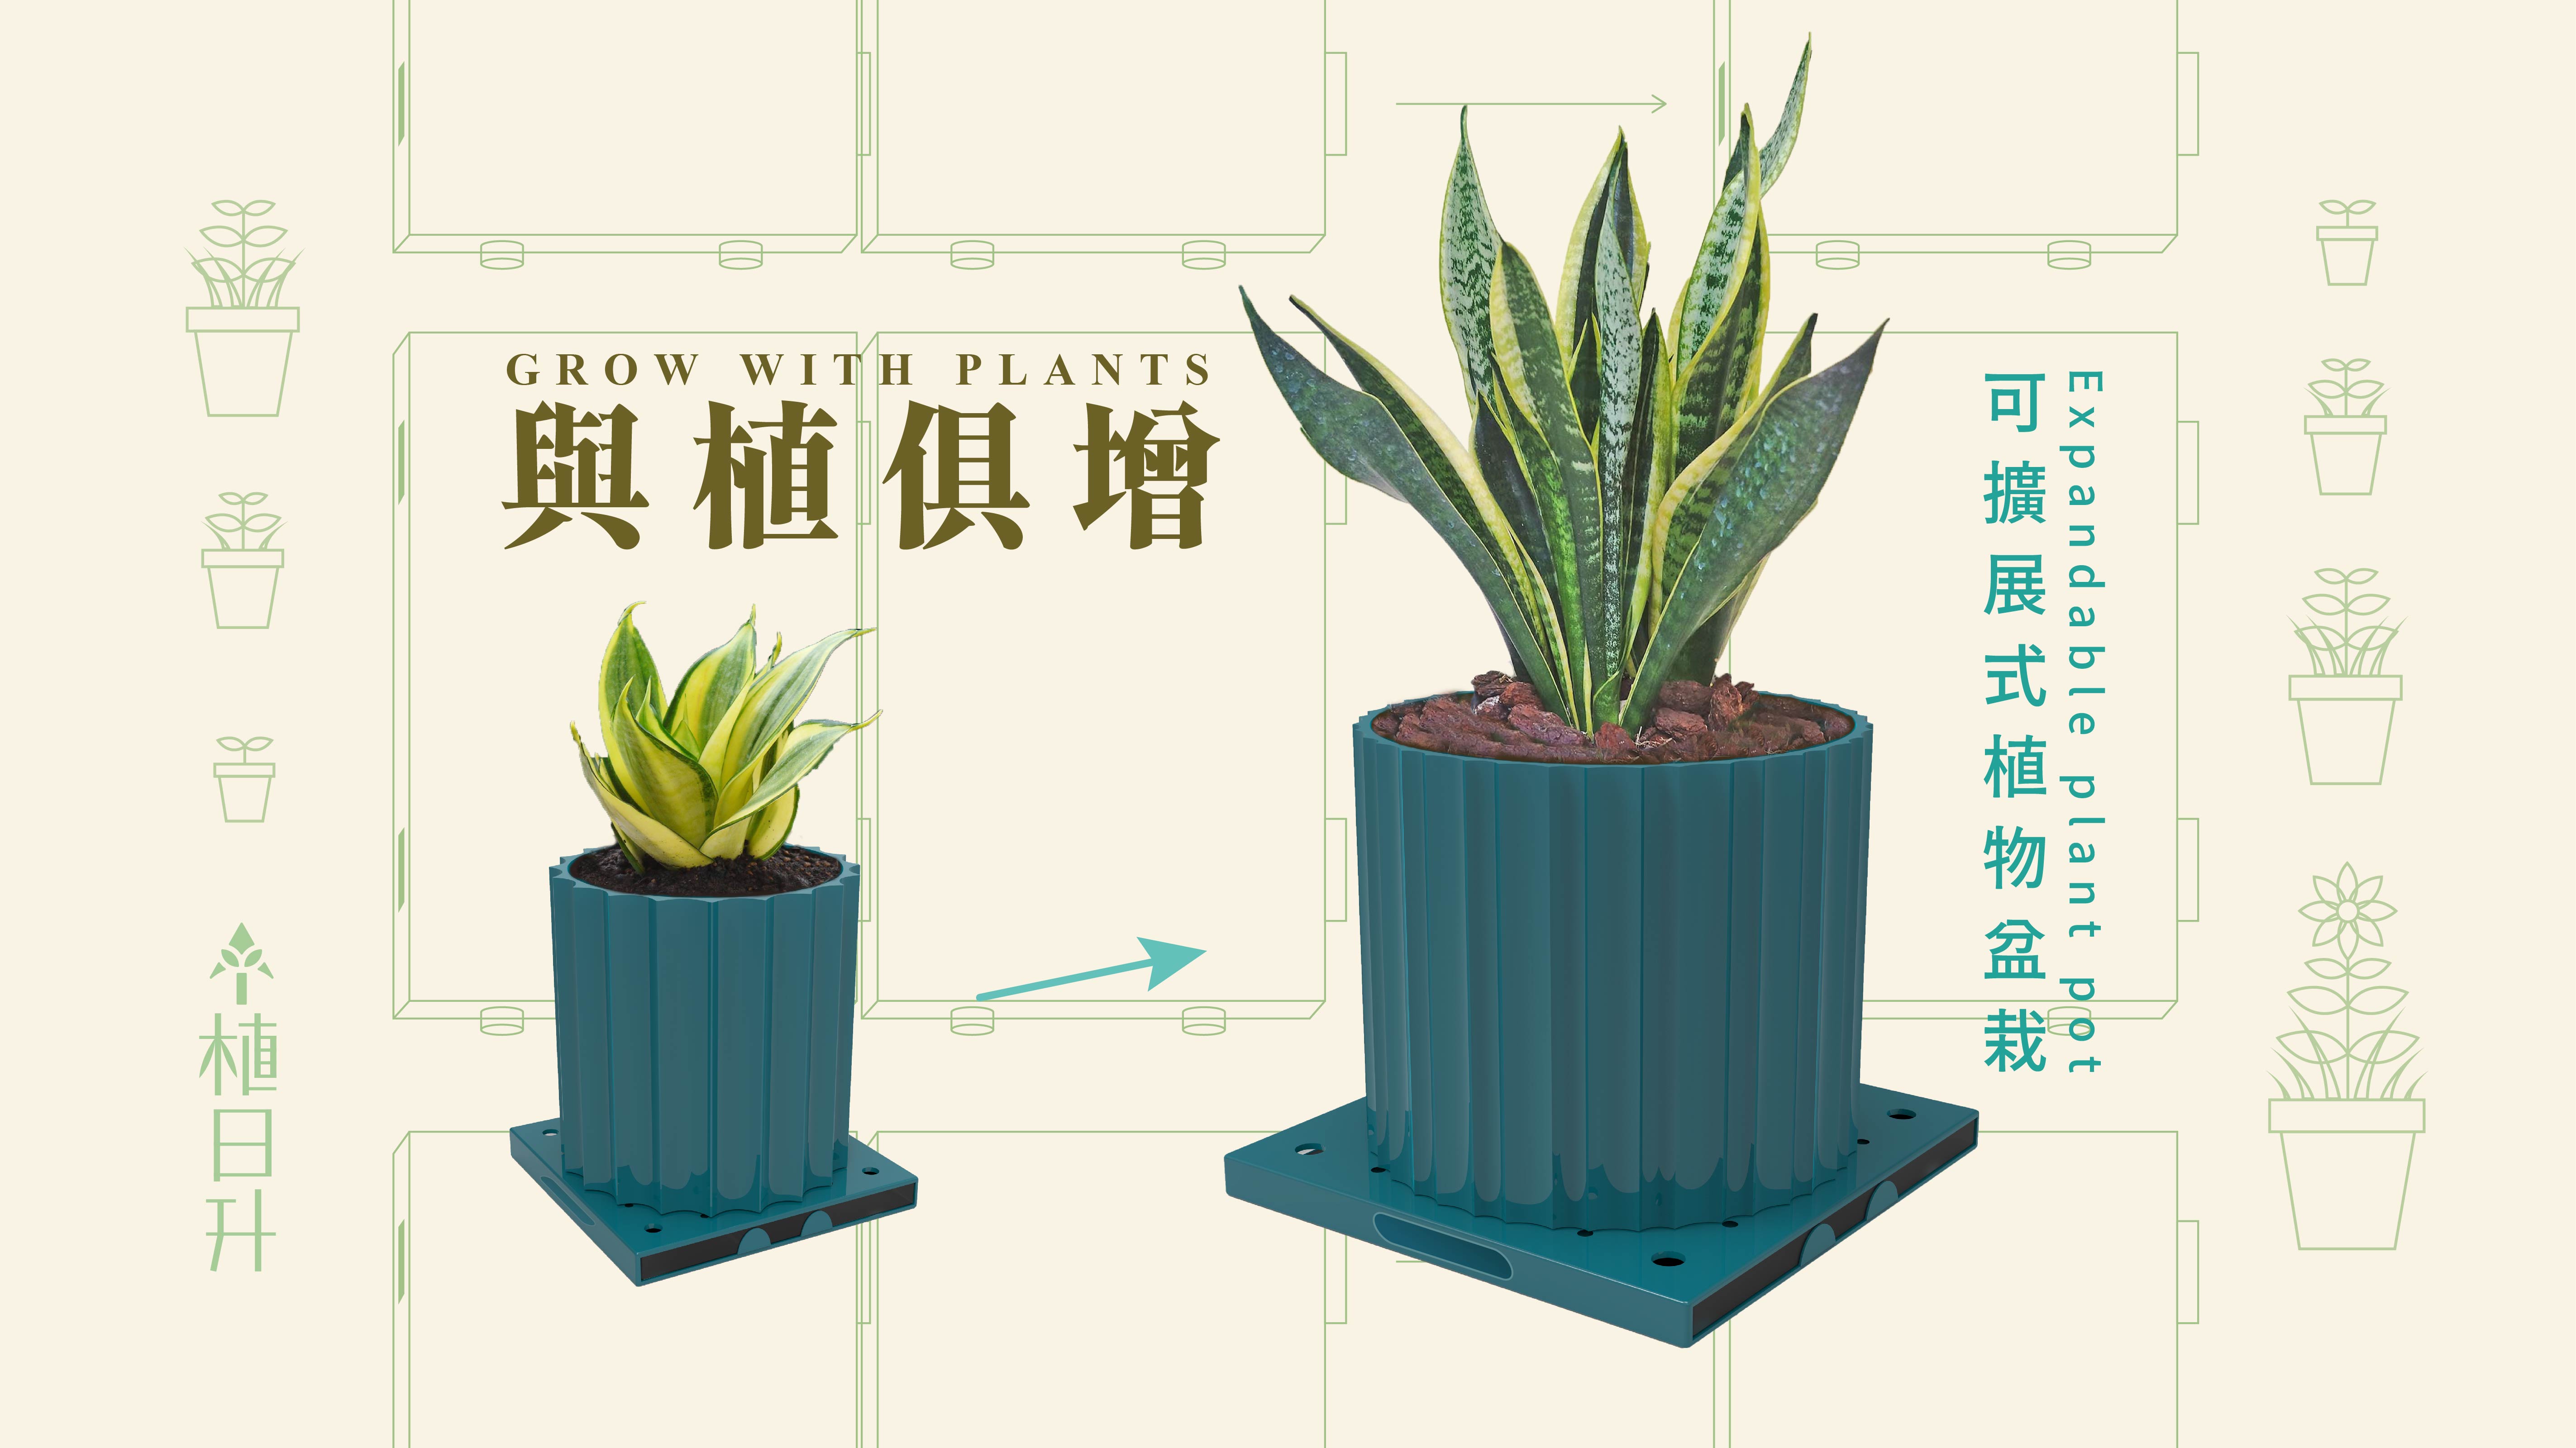 「與植俱增」- 可擴展式植物盆栽